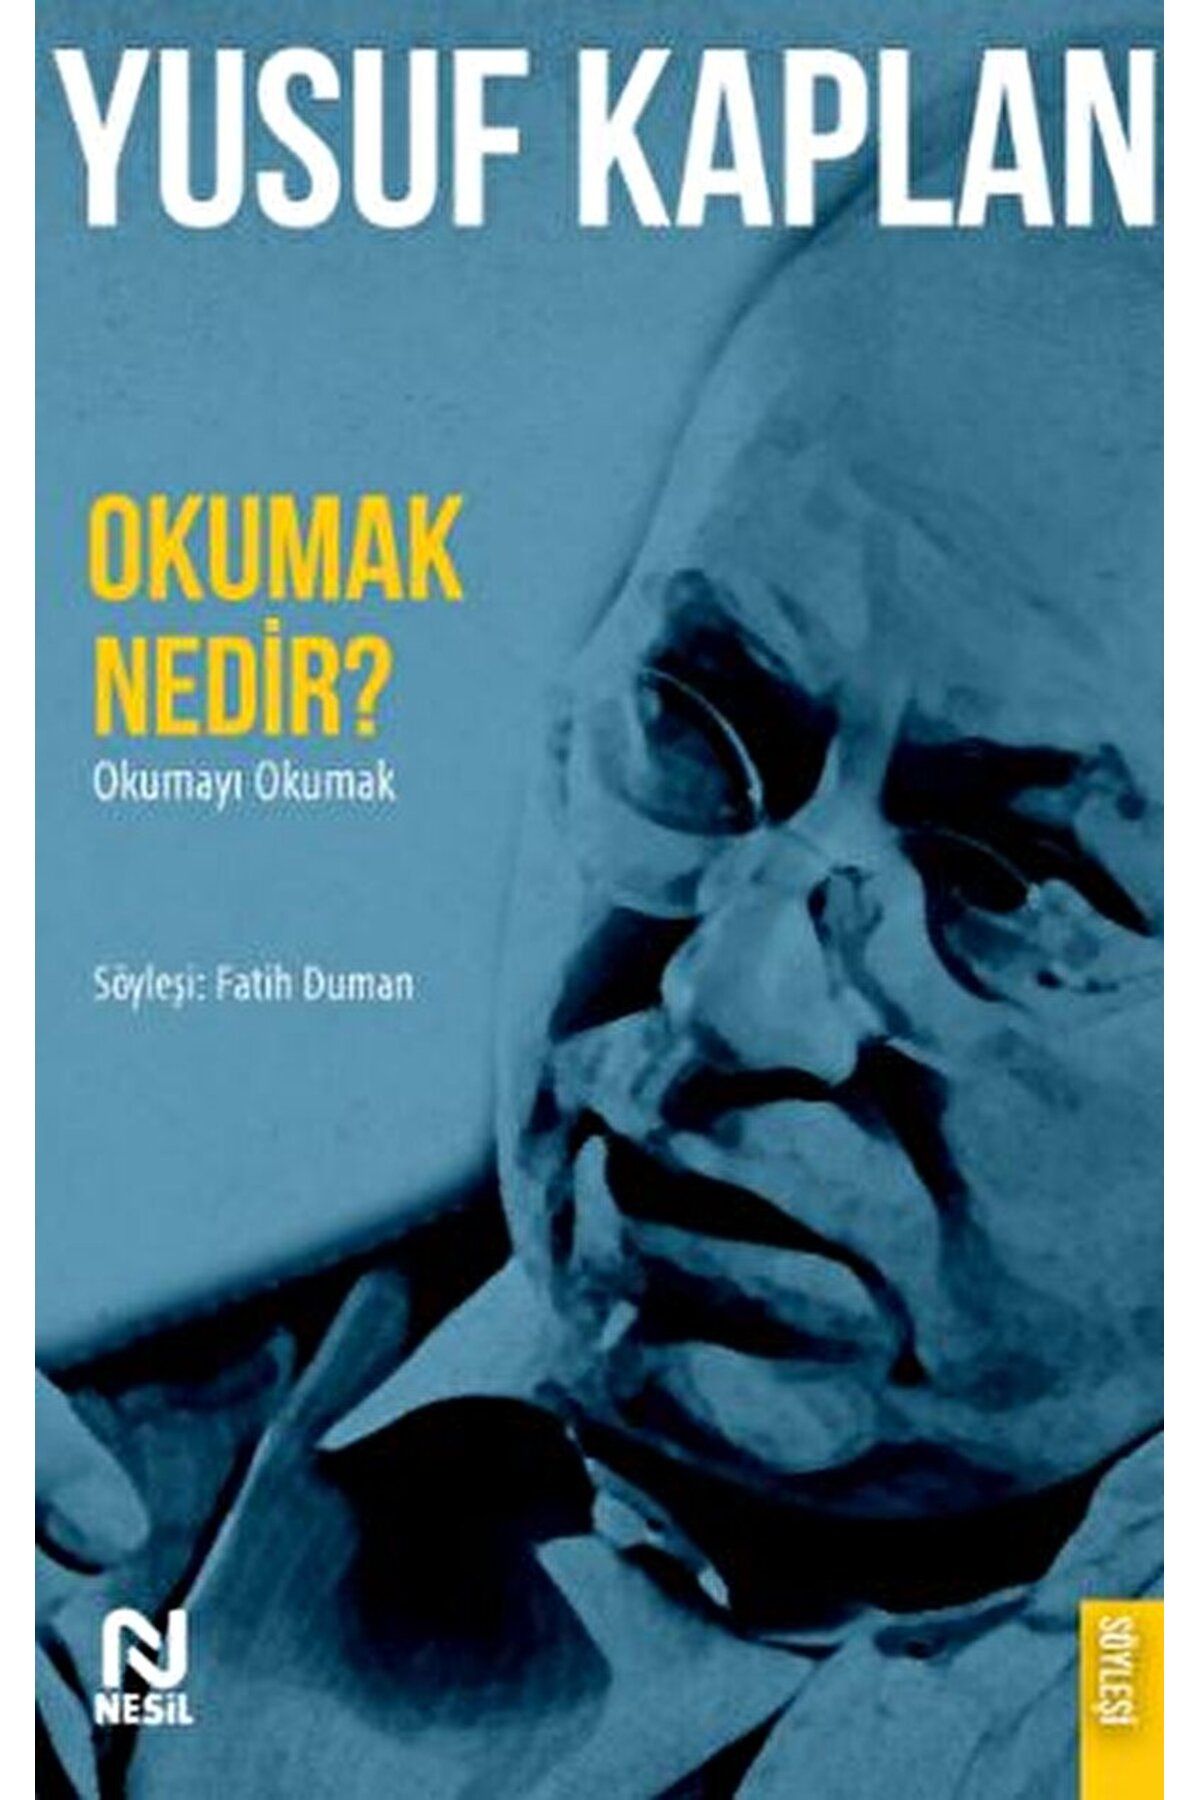 Nesil Yayınları Okumak Nedir? - Okumayı Okumak / Yusuf Kaplan / Nesil Yayınları / 9786051837345